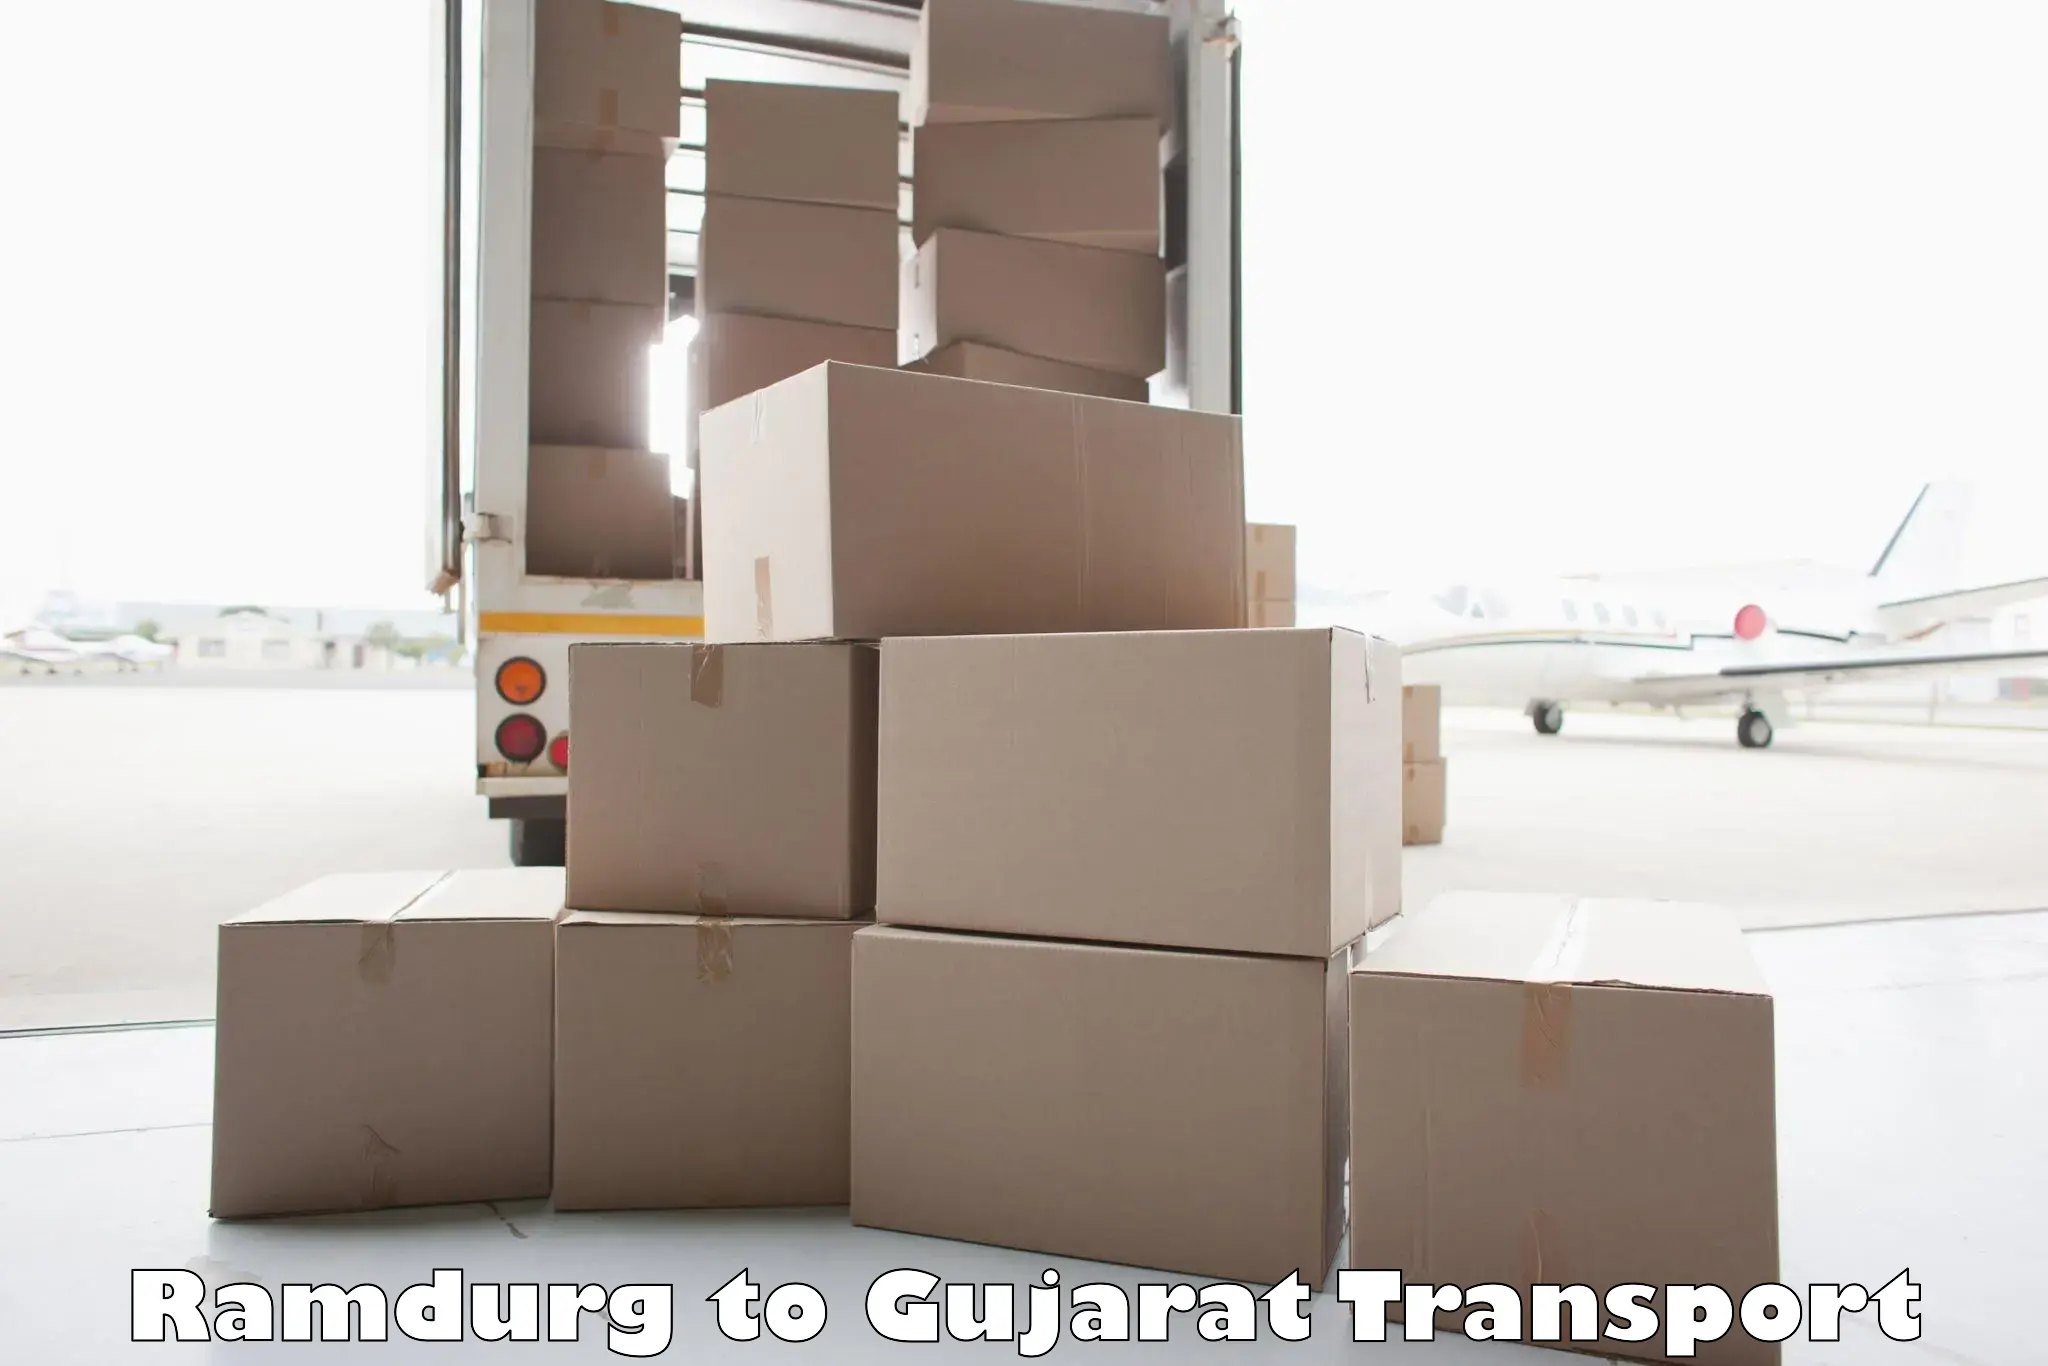 Interstate transport services Ramdurg to Gujarat